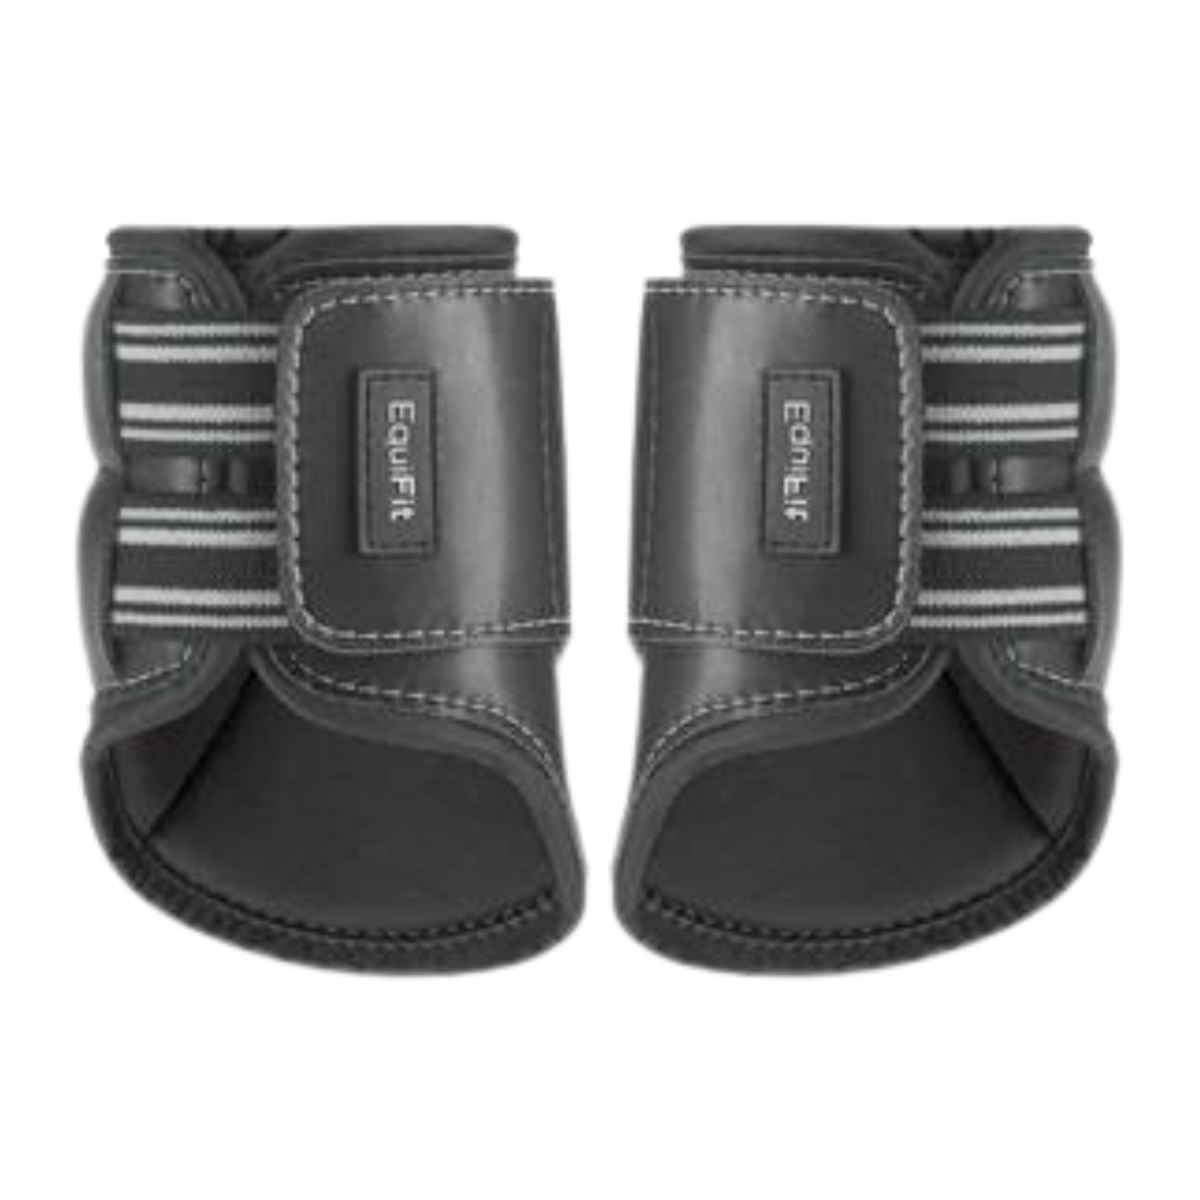 Equifit MultiTeq Hind Boots in Black - Medium